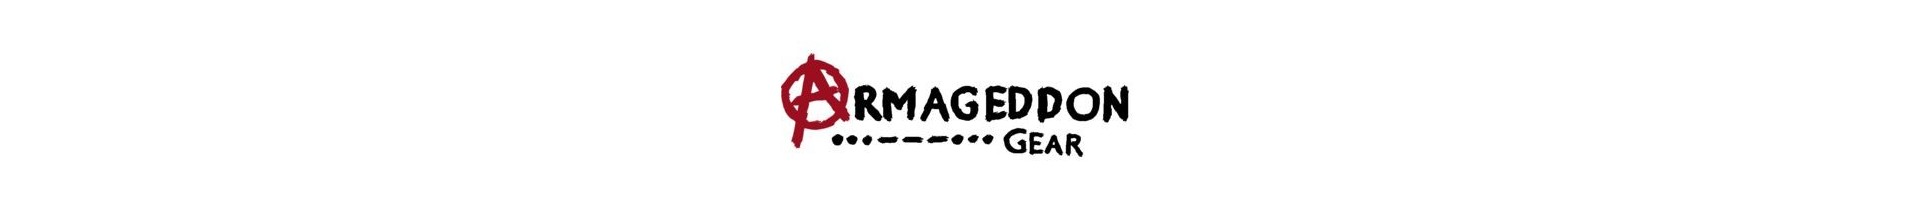 Retrouvez sur www.tactirshop.fr les sacs et accessoires Armageddon Gear